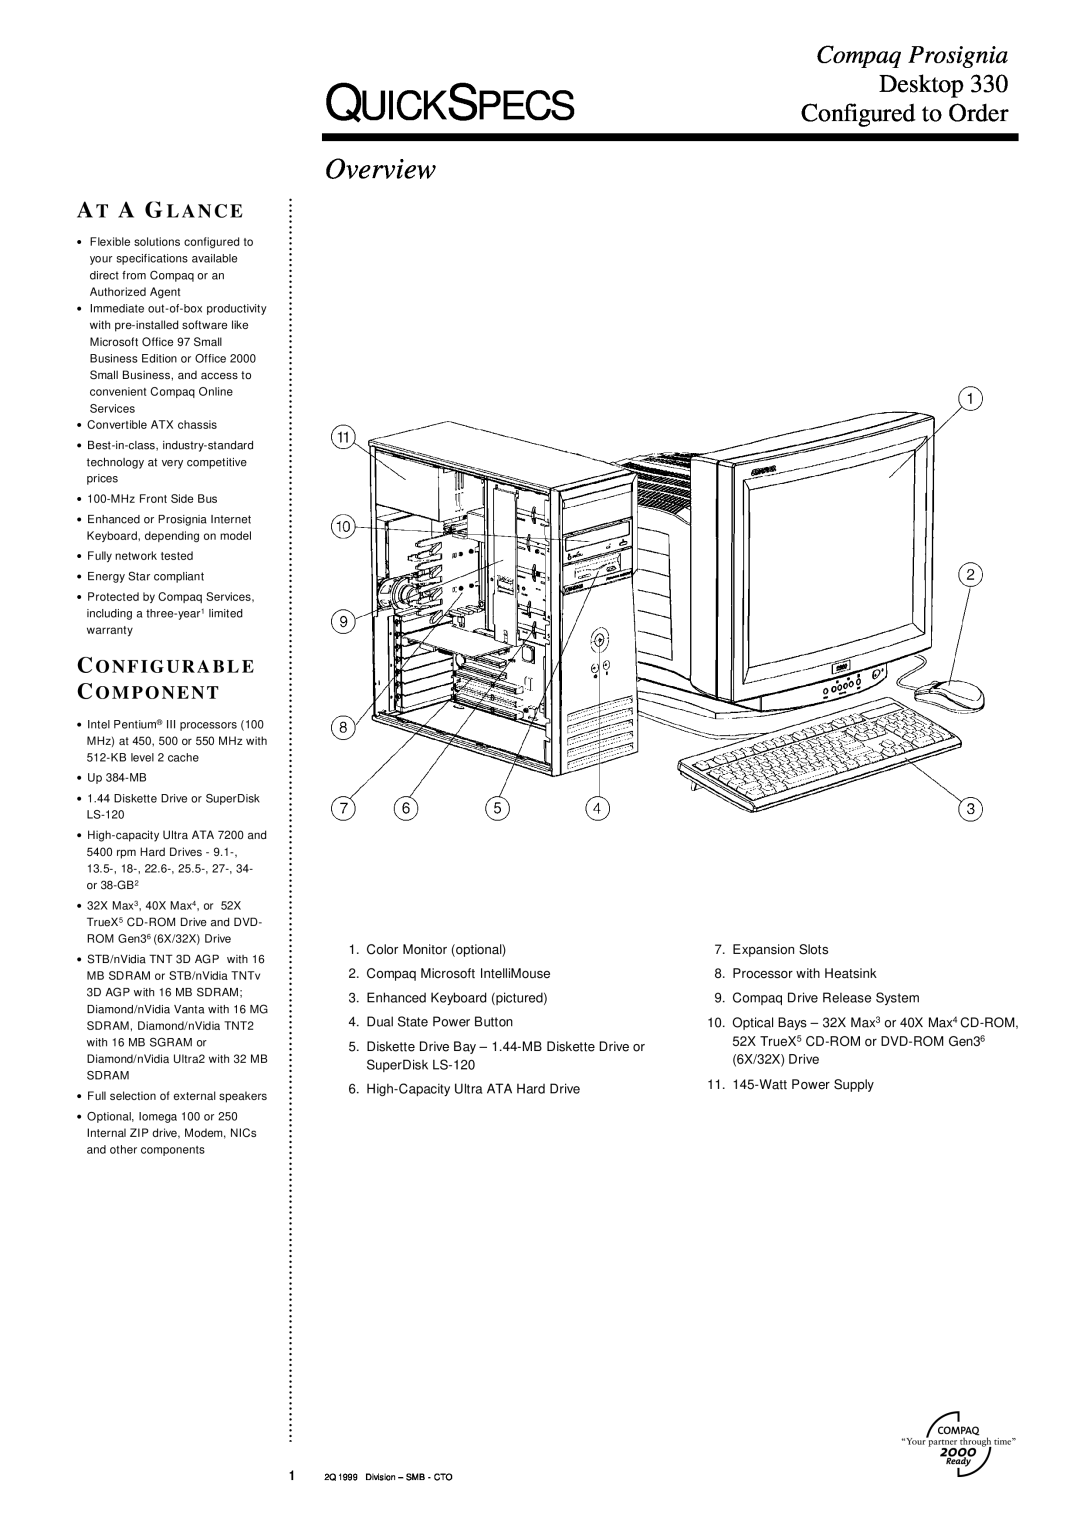 Compaq DESKTOP 330 specifications Quickspecs, Overview, Compaq Prosignia, Desktop, Configured to Order, A T A G L A N C E 